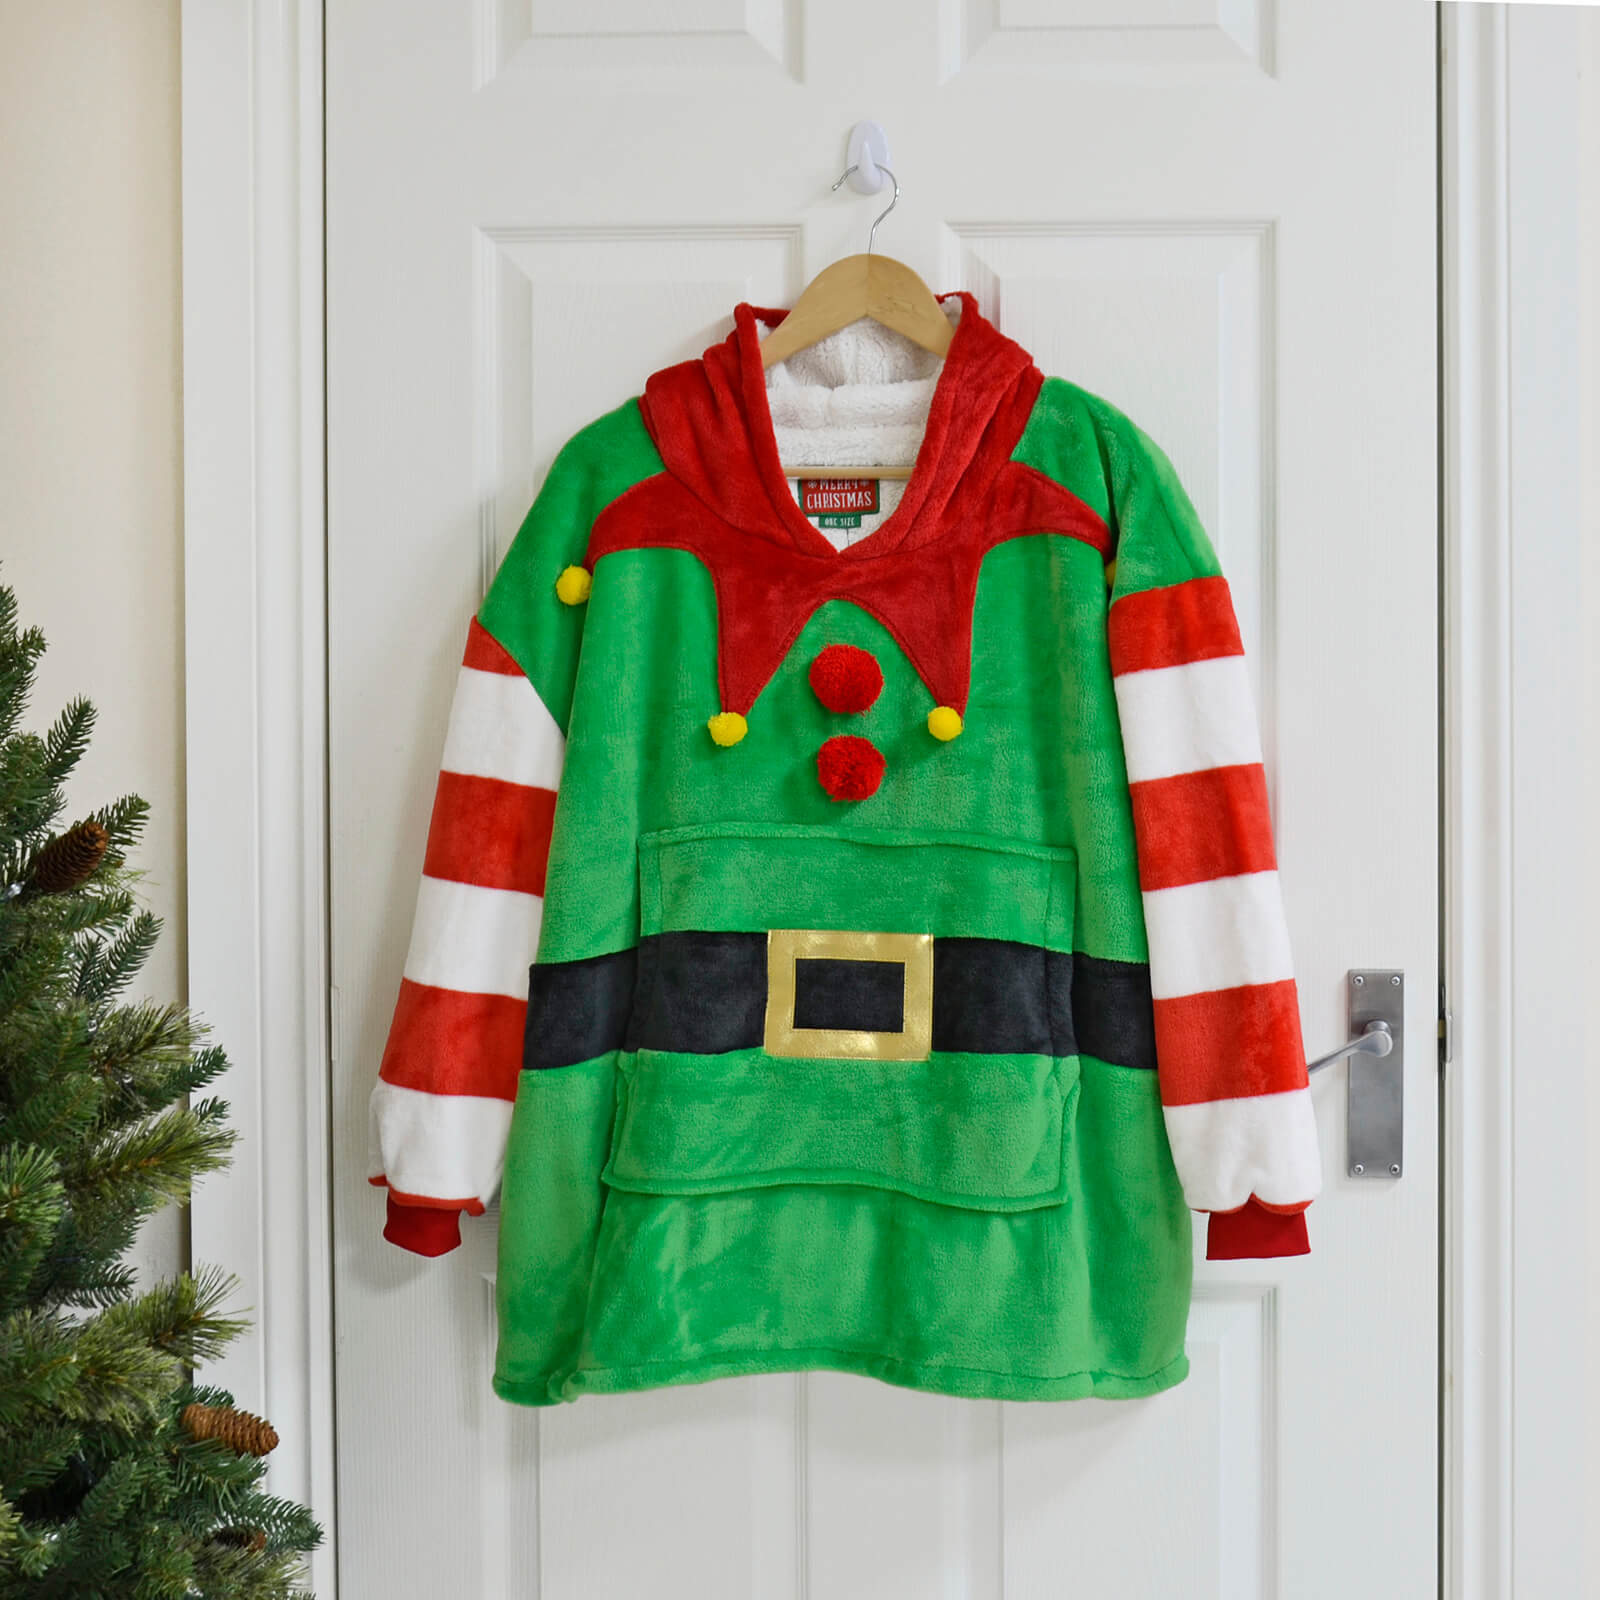 Mr Crimbo Kids Christmas Elf Hoodie Blanket Unisex Fleece Top - MrCrimbo.co.uk -SRG4Q17750 - -christmas elf